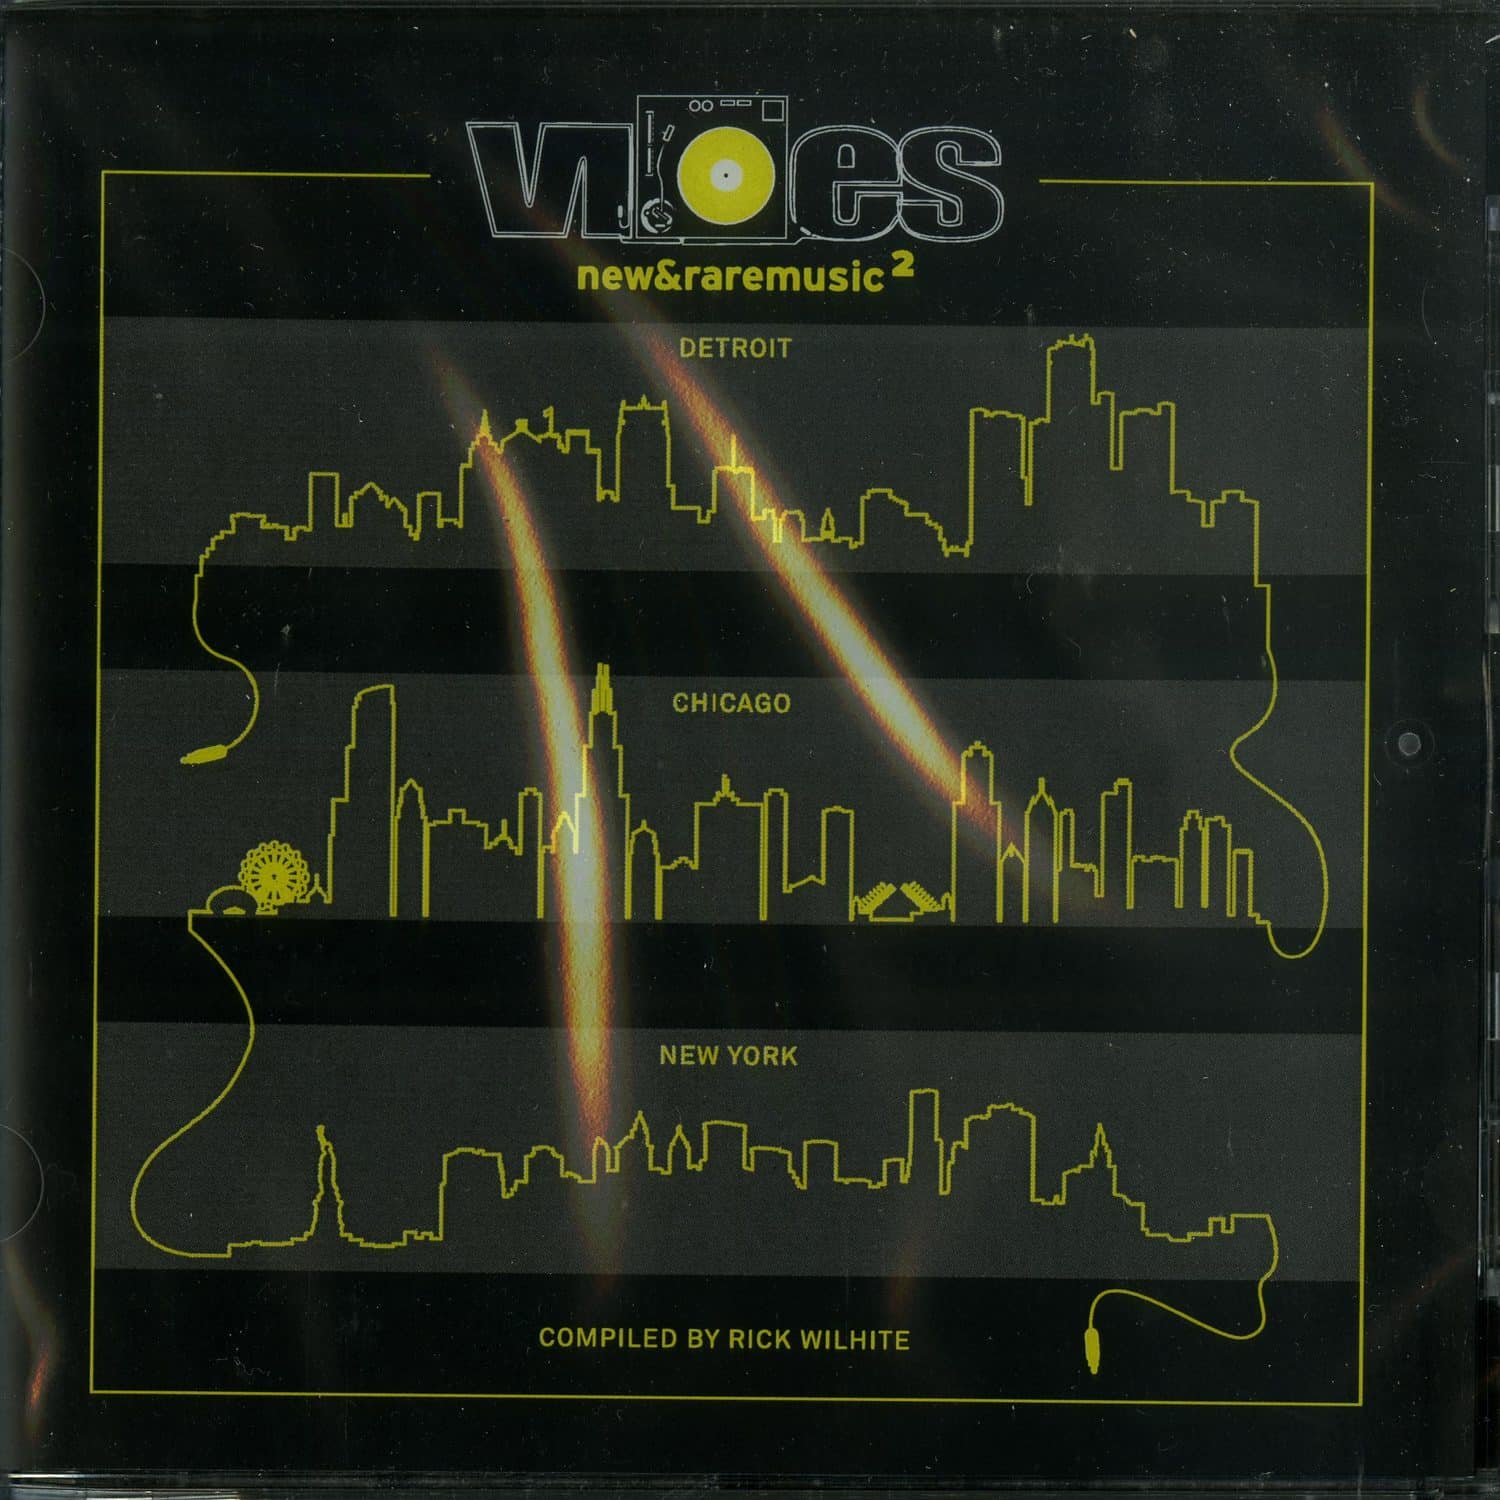 Rick Wilhite - VIBES 2 - NEW & RARE MUSIC PART ONE 